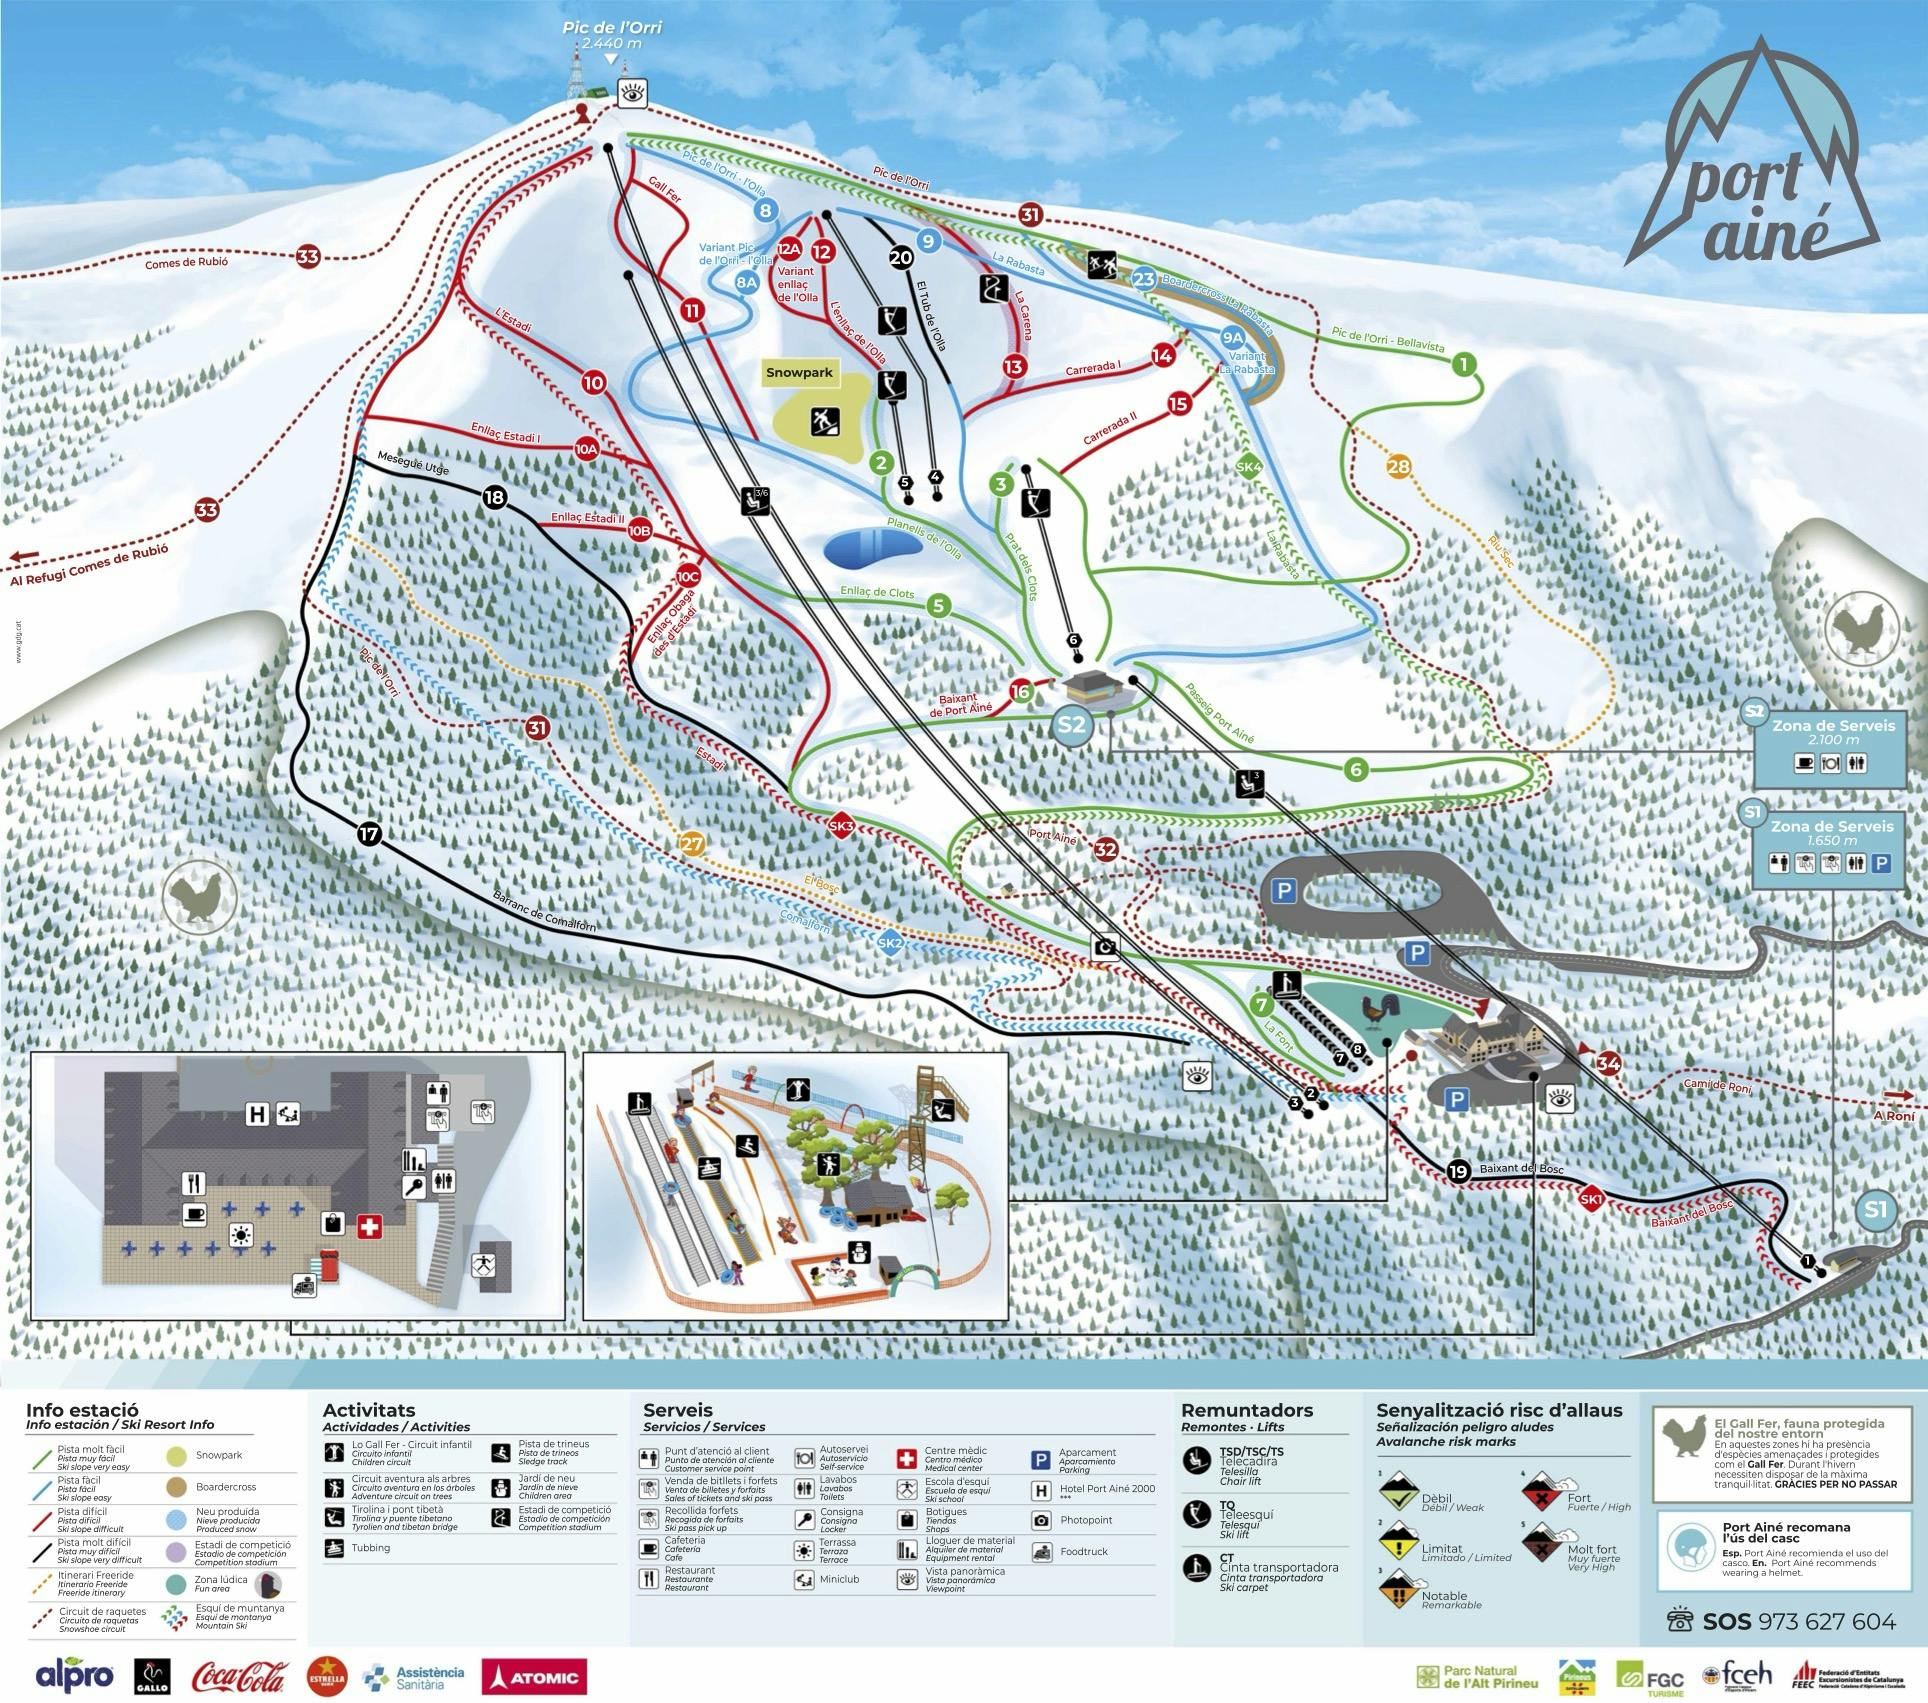 Copitos de Nieve - Estaciones de esquí, ski, snowboard - Mapa de la estación Port Ainé